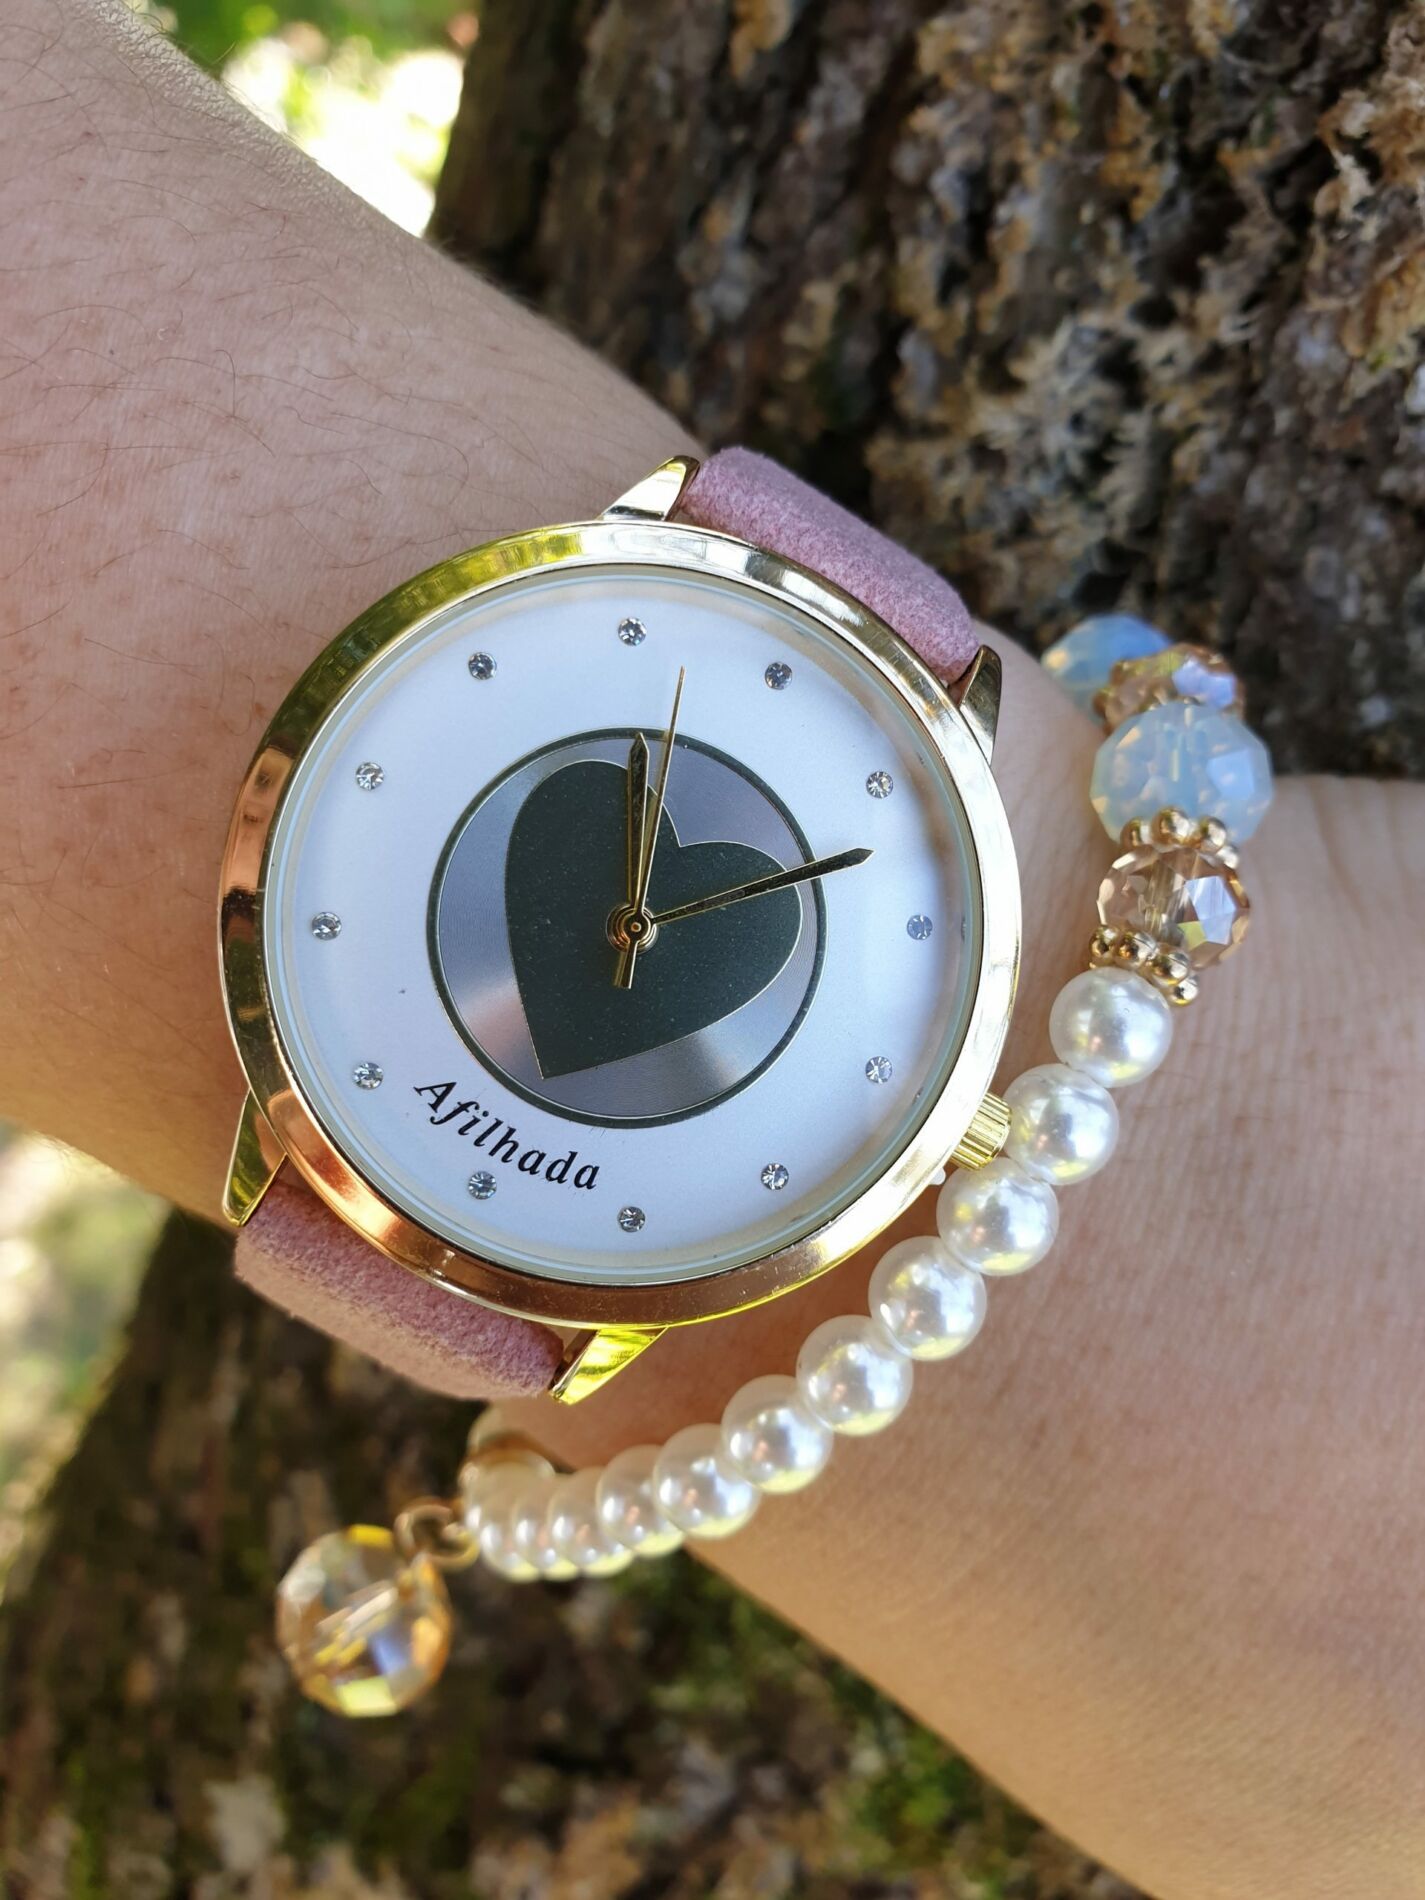 Relógio Afilhada Dourado + Oferta de uma pulseira